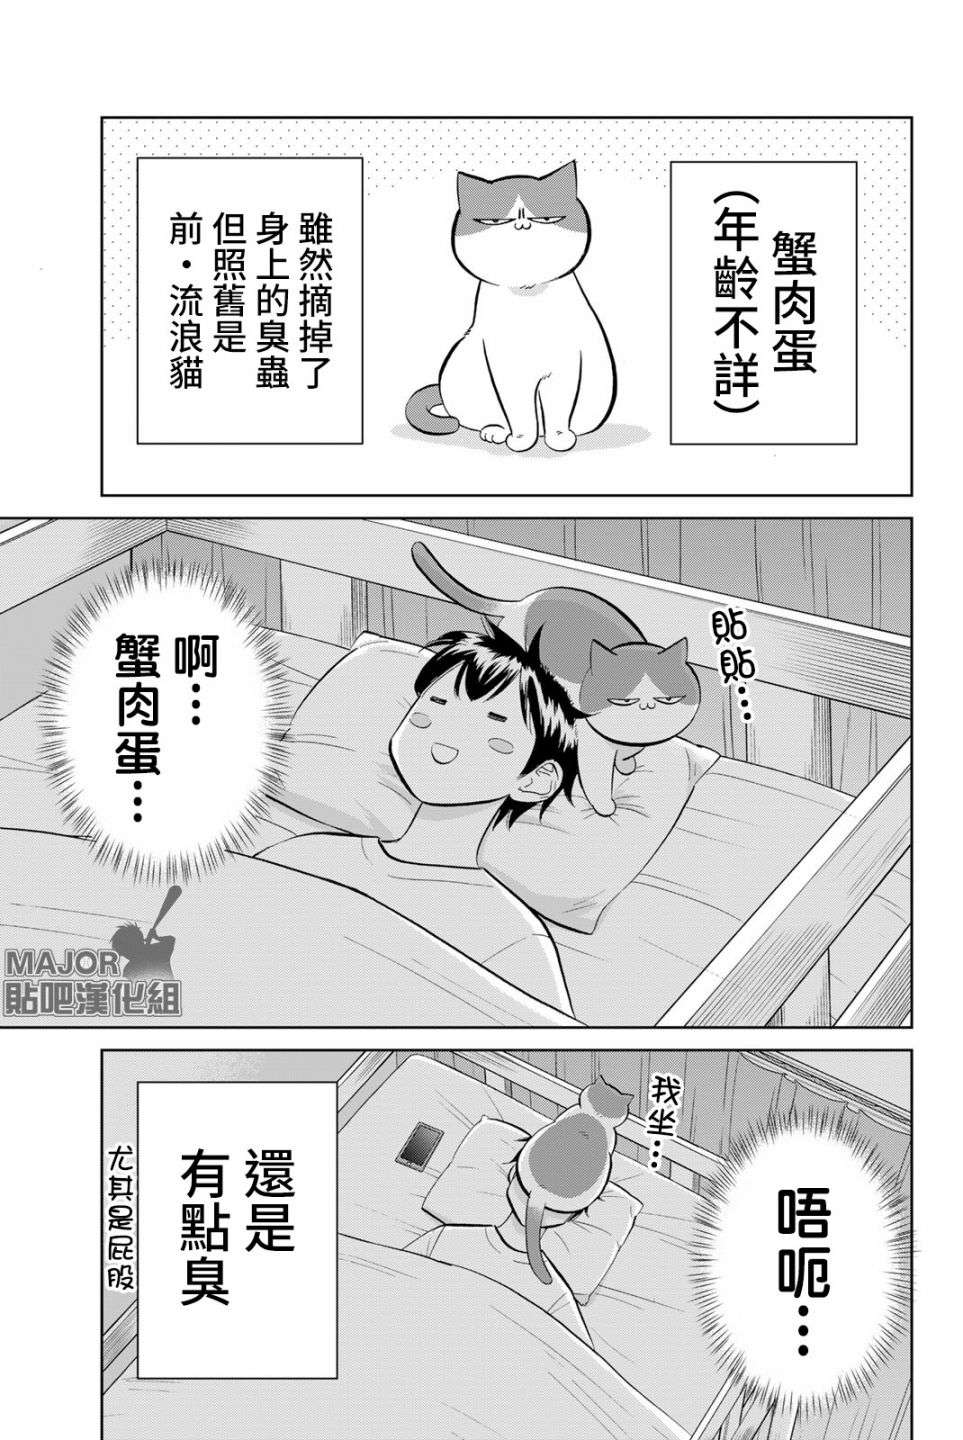 钻石猫猫!!青道高中棒球部猫日志第06话